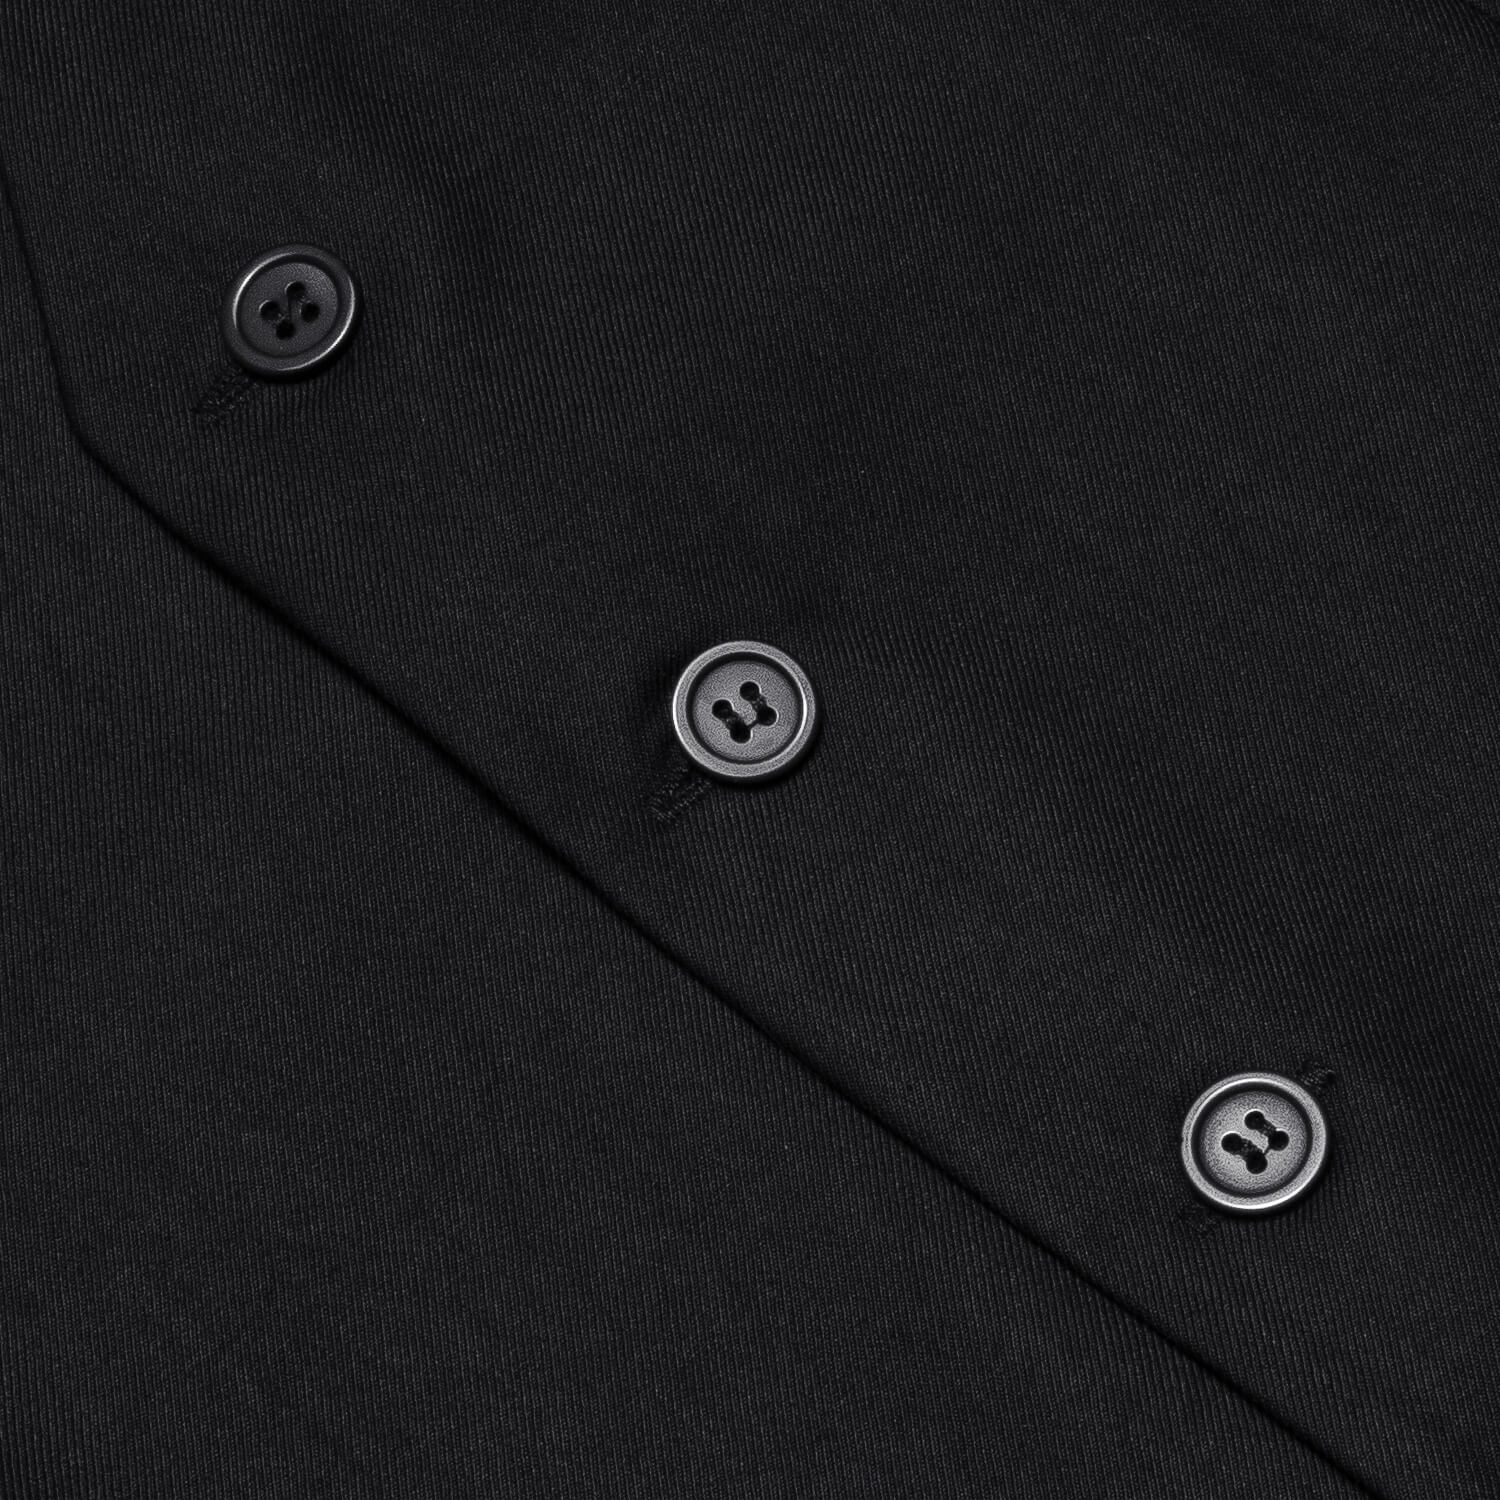 Hi-Tie Men's Work Vest Black Solid Silk Vest Classic Business Waistcoat